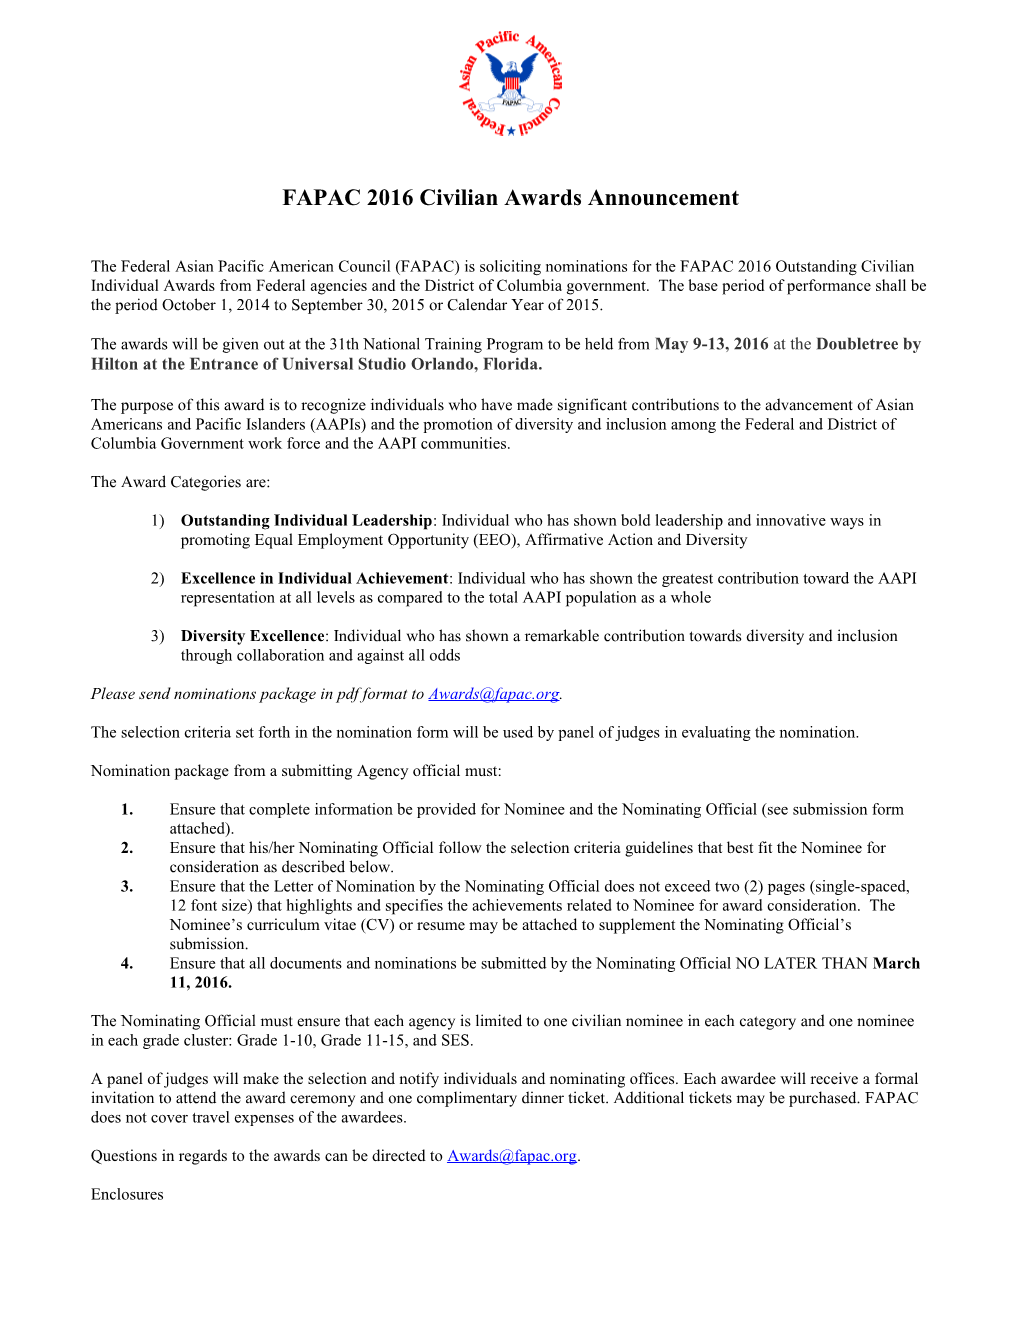 FAPAC - 2014 Civilian Awards Vs2